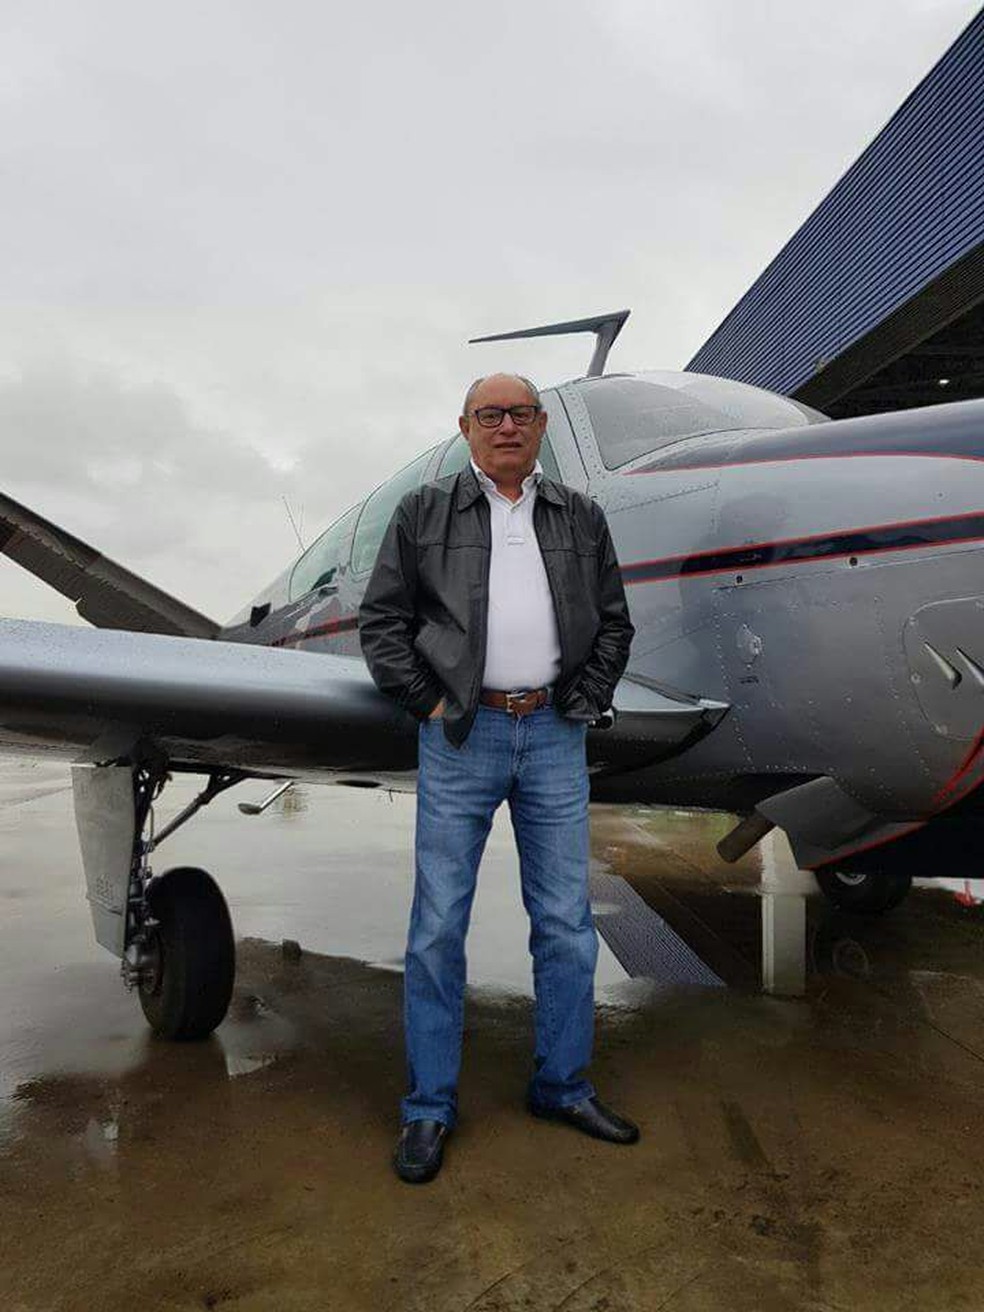 Uma das vítimas foi identificada como Marinho, piloto e proprietário da aeronave que caiu, segundo o delegado Vicente Gomes (Foto: Delegado Vicente Gomes)